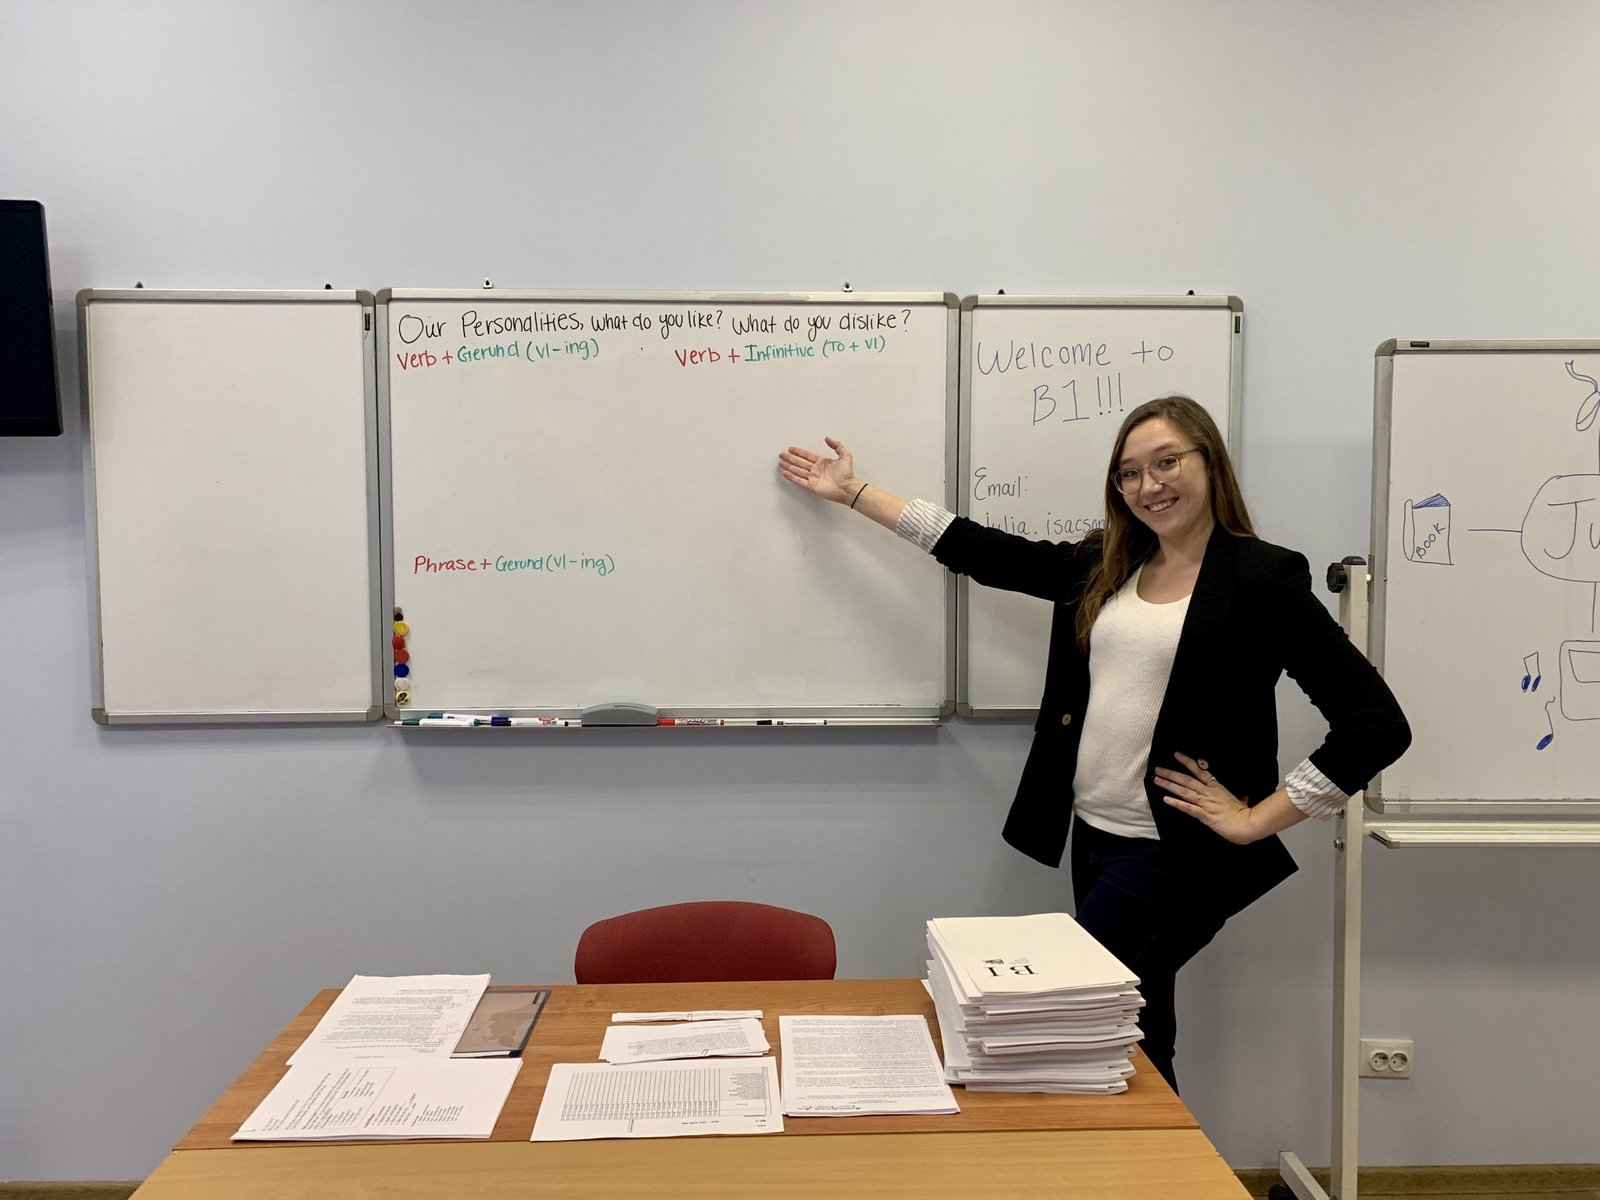 Teaching English in Russia